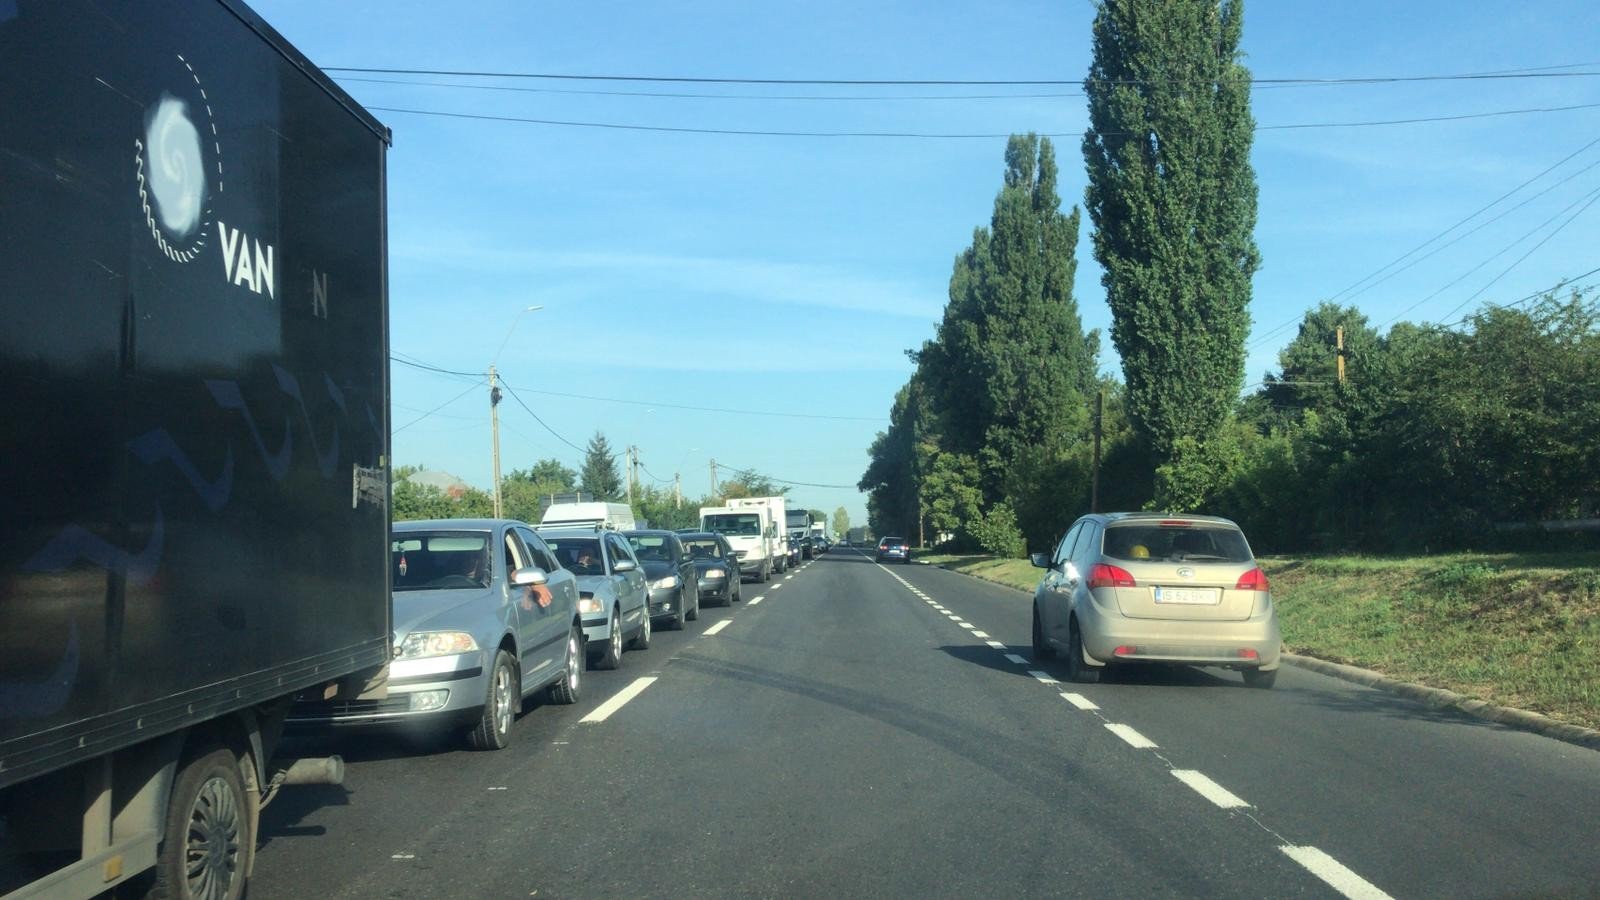  Noile semafoare din Podu Iloaie, testate de pe 12 iulie. Pe hârtie, coada de 5 km se reduce la 1km